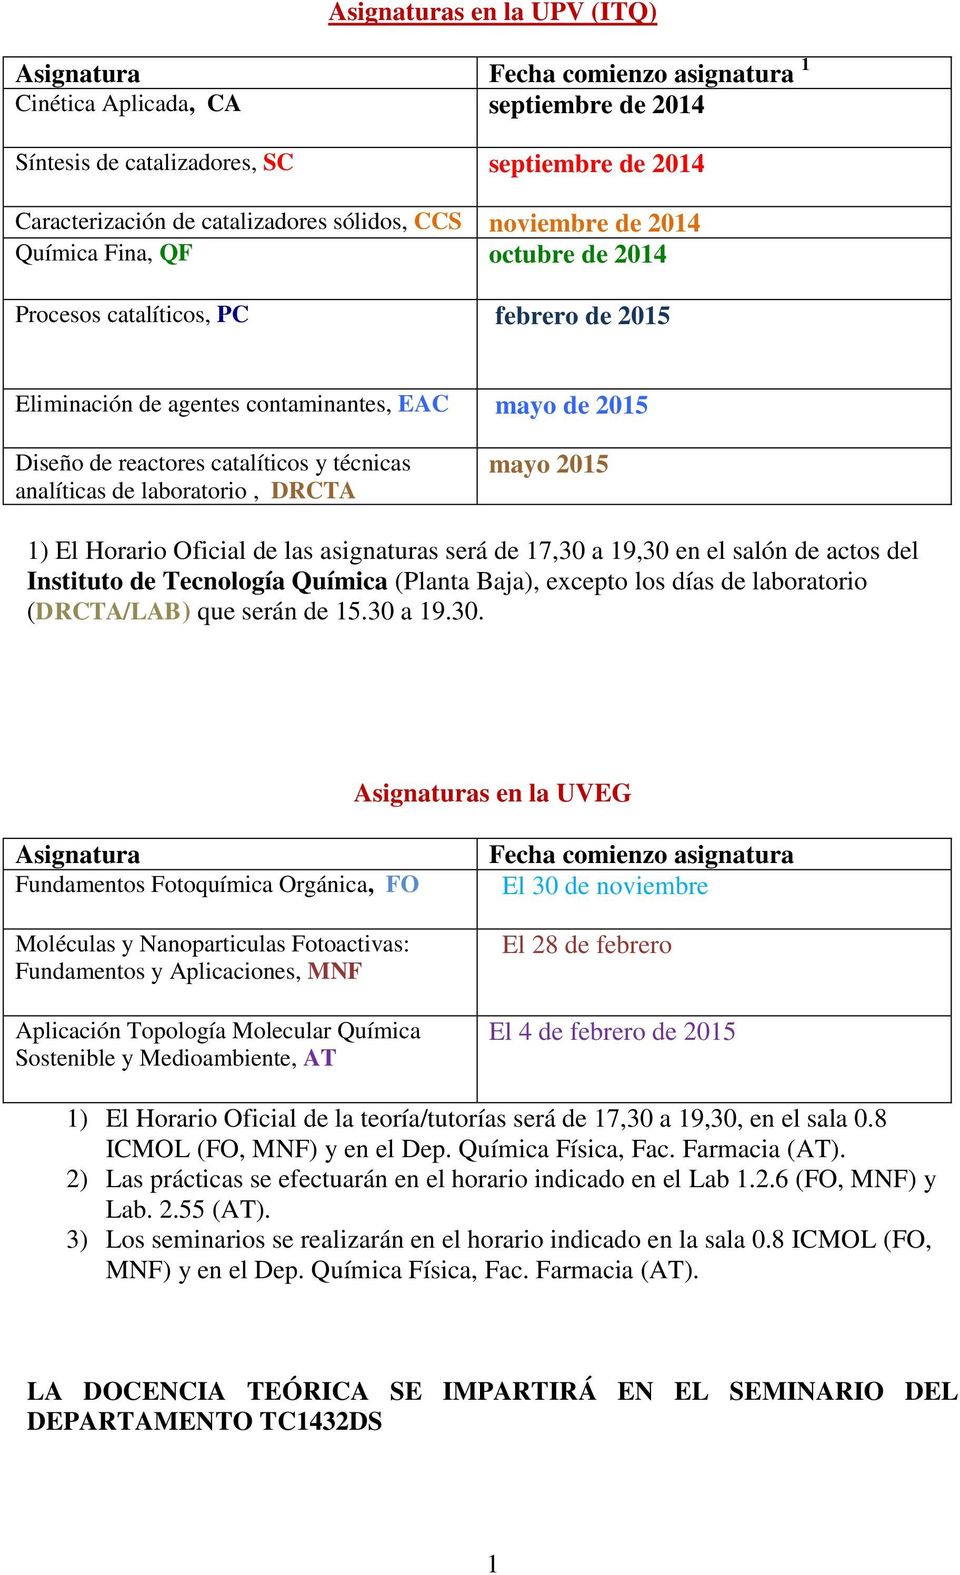 analíticas de laboratorio, DRCTA mayo 2015 1) El Horario Oficial de las asignaturas será de 17,30 a 19,30 en el salón de actos del Instituto de Tecnología Química (Planta Baja), excepto los días de